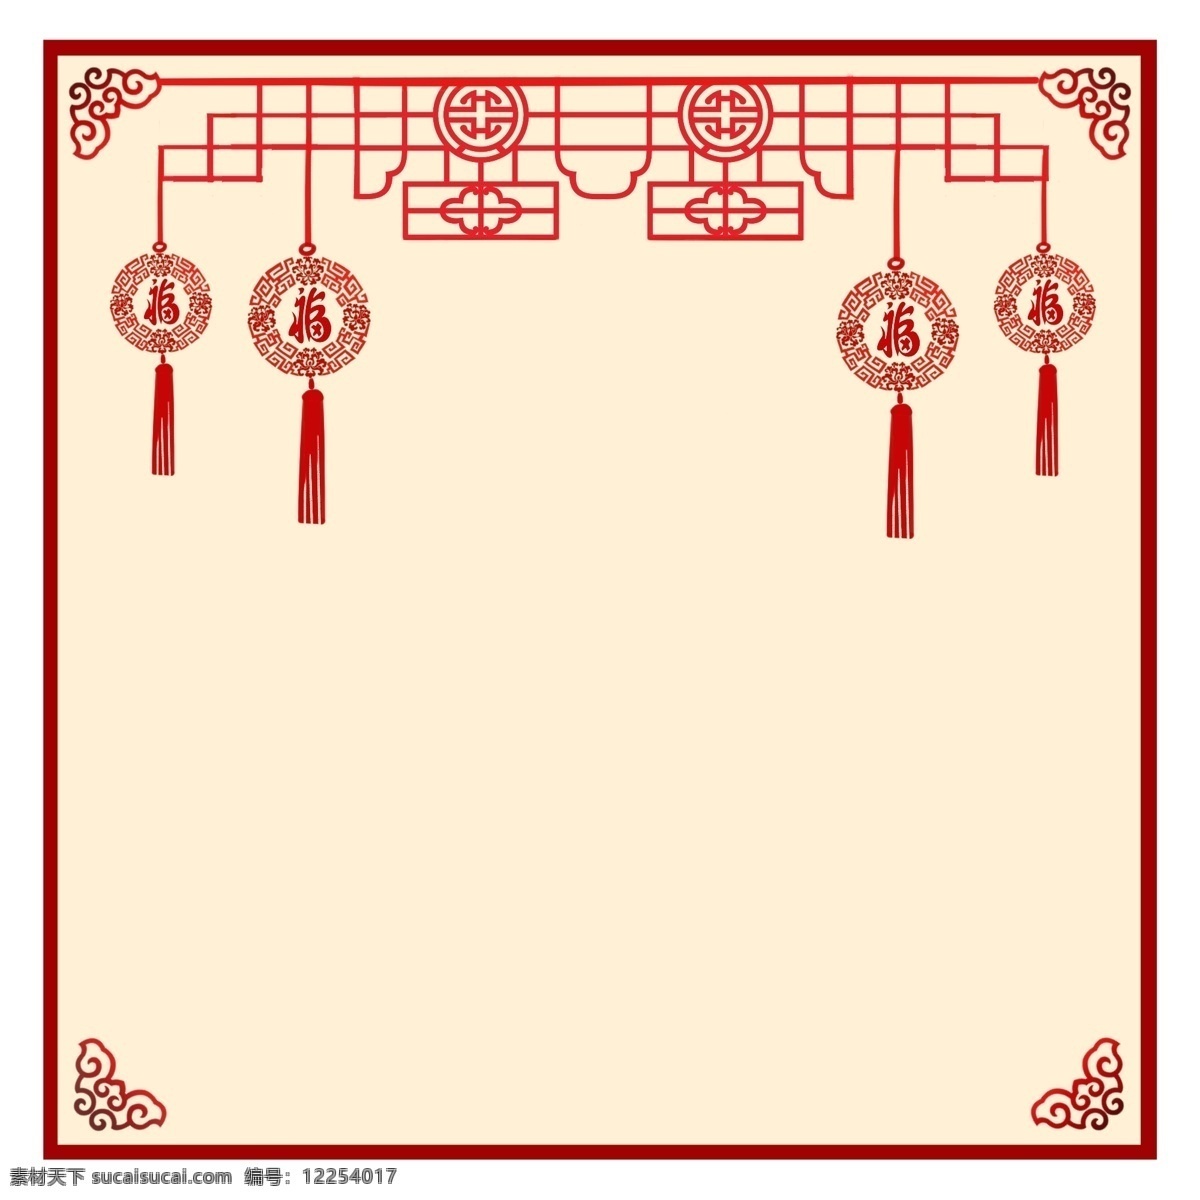 红色 中国结 挂饰 边框 喜庆 喜庆红色边框 中国结装饰 福字挂饰 传统